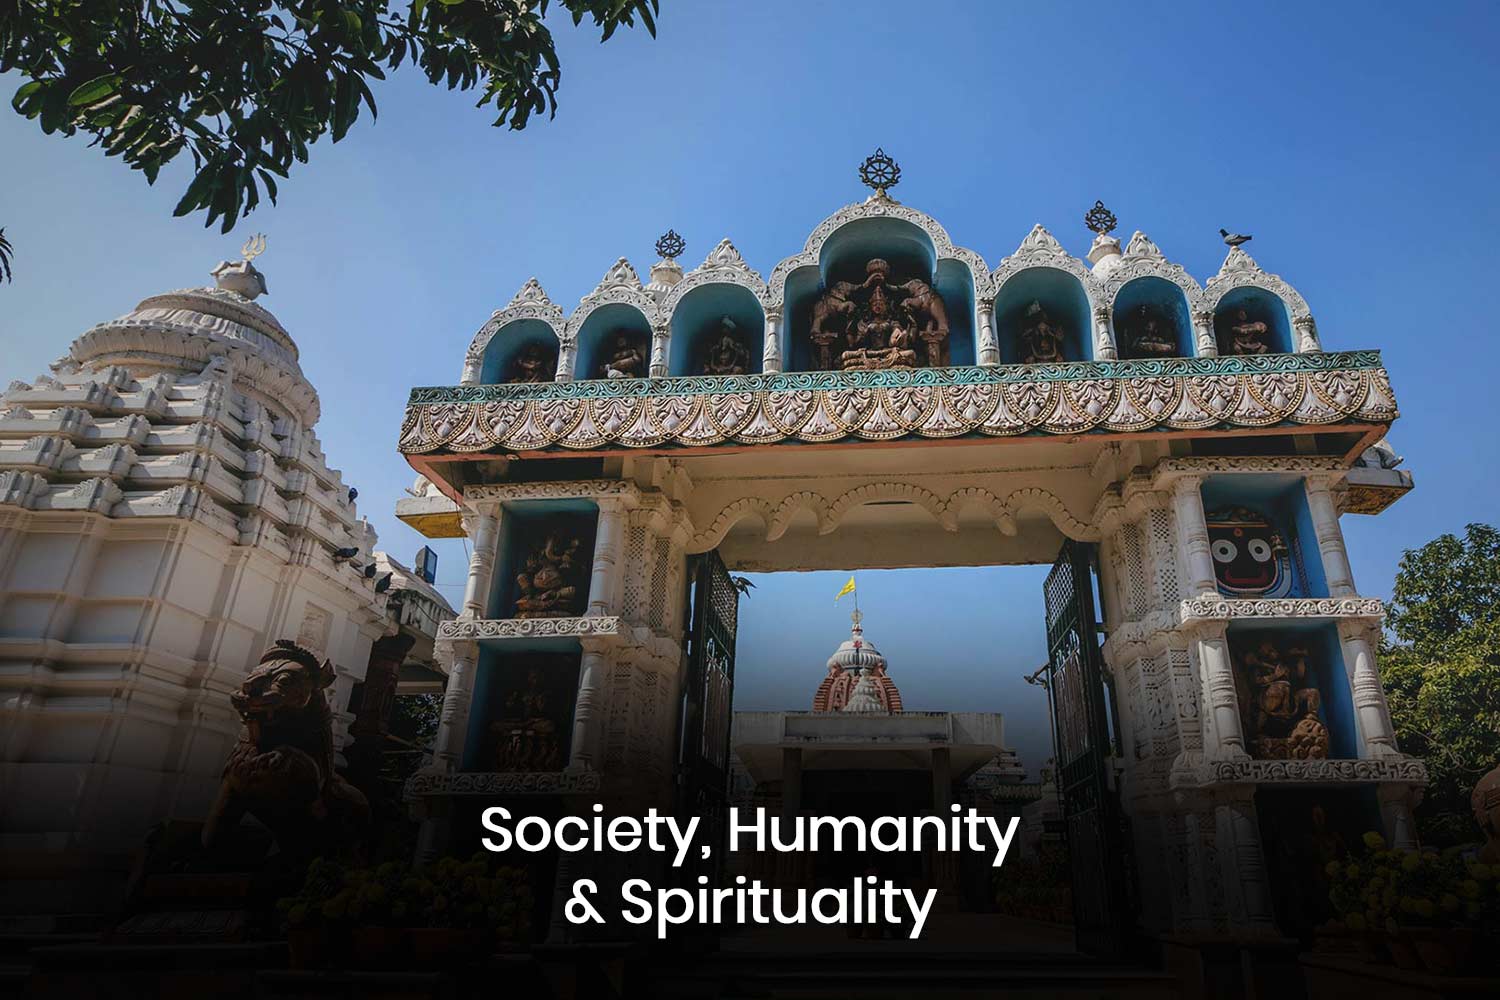 Society, Humanity & Spirituality by Achyuta Samanta